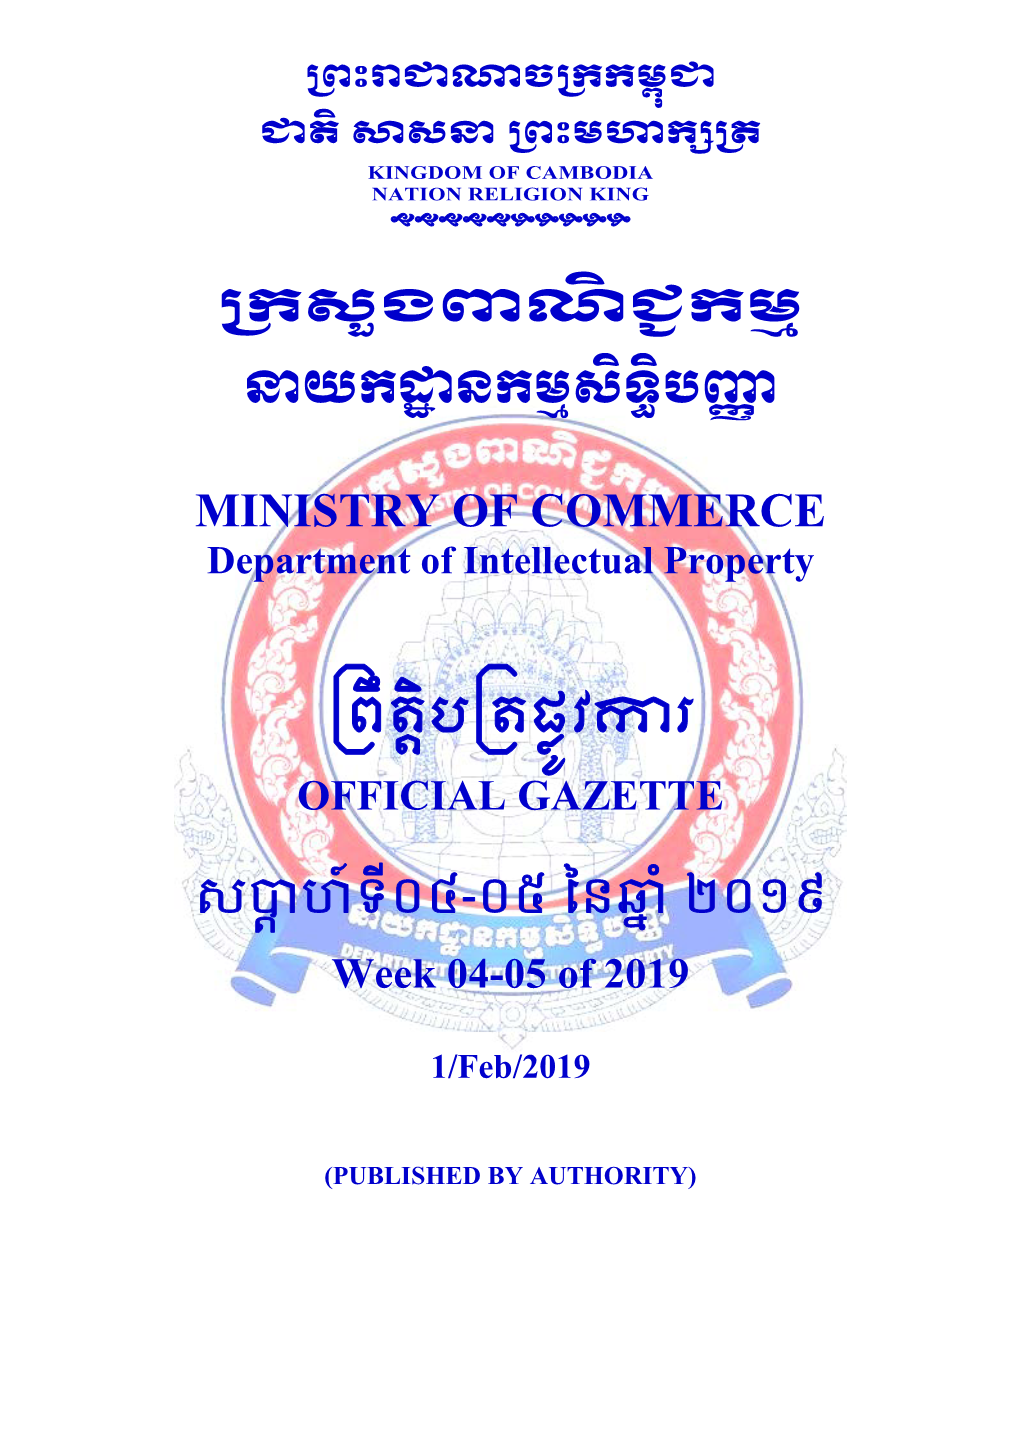 Khan Sen Sok, Phnom Penh Cambodia 8- 70501 9- 21/01/2019 10